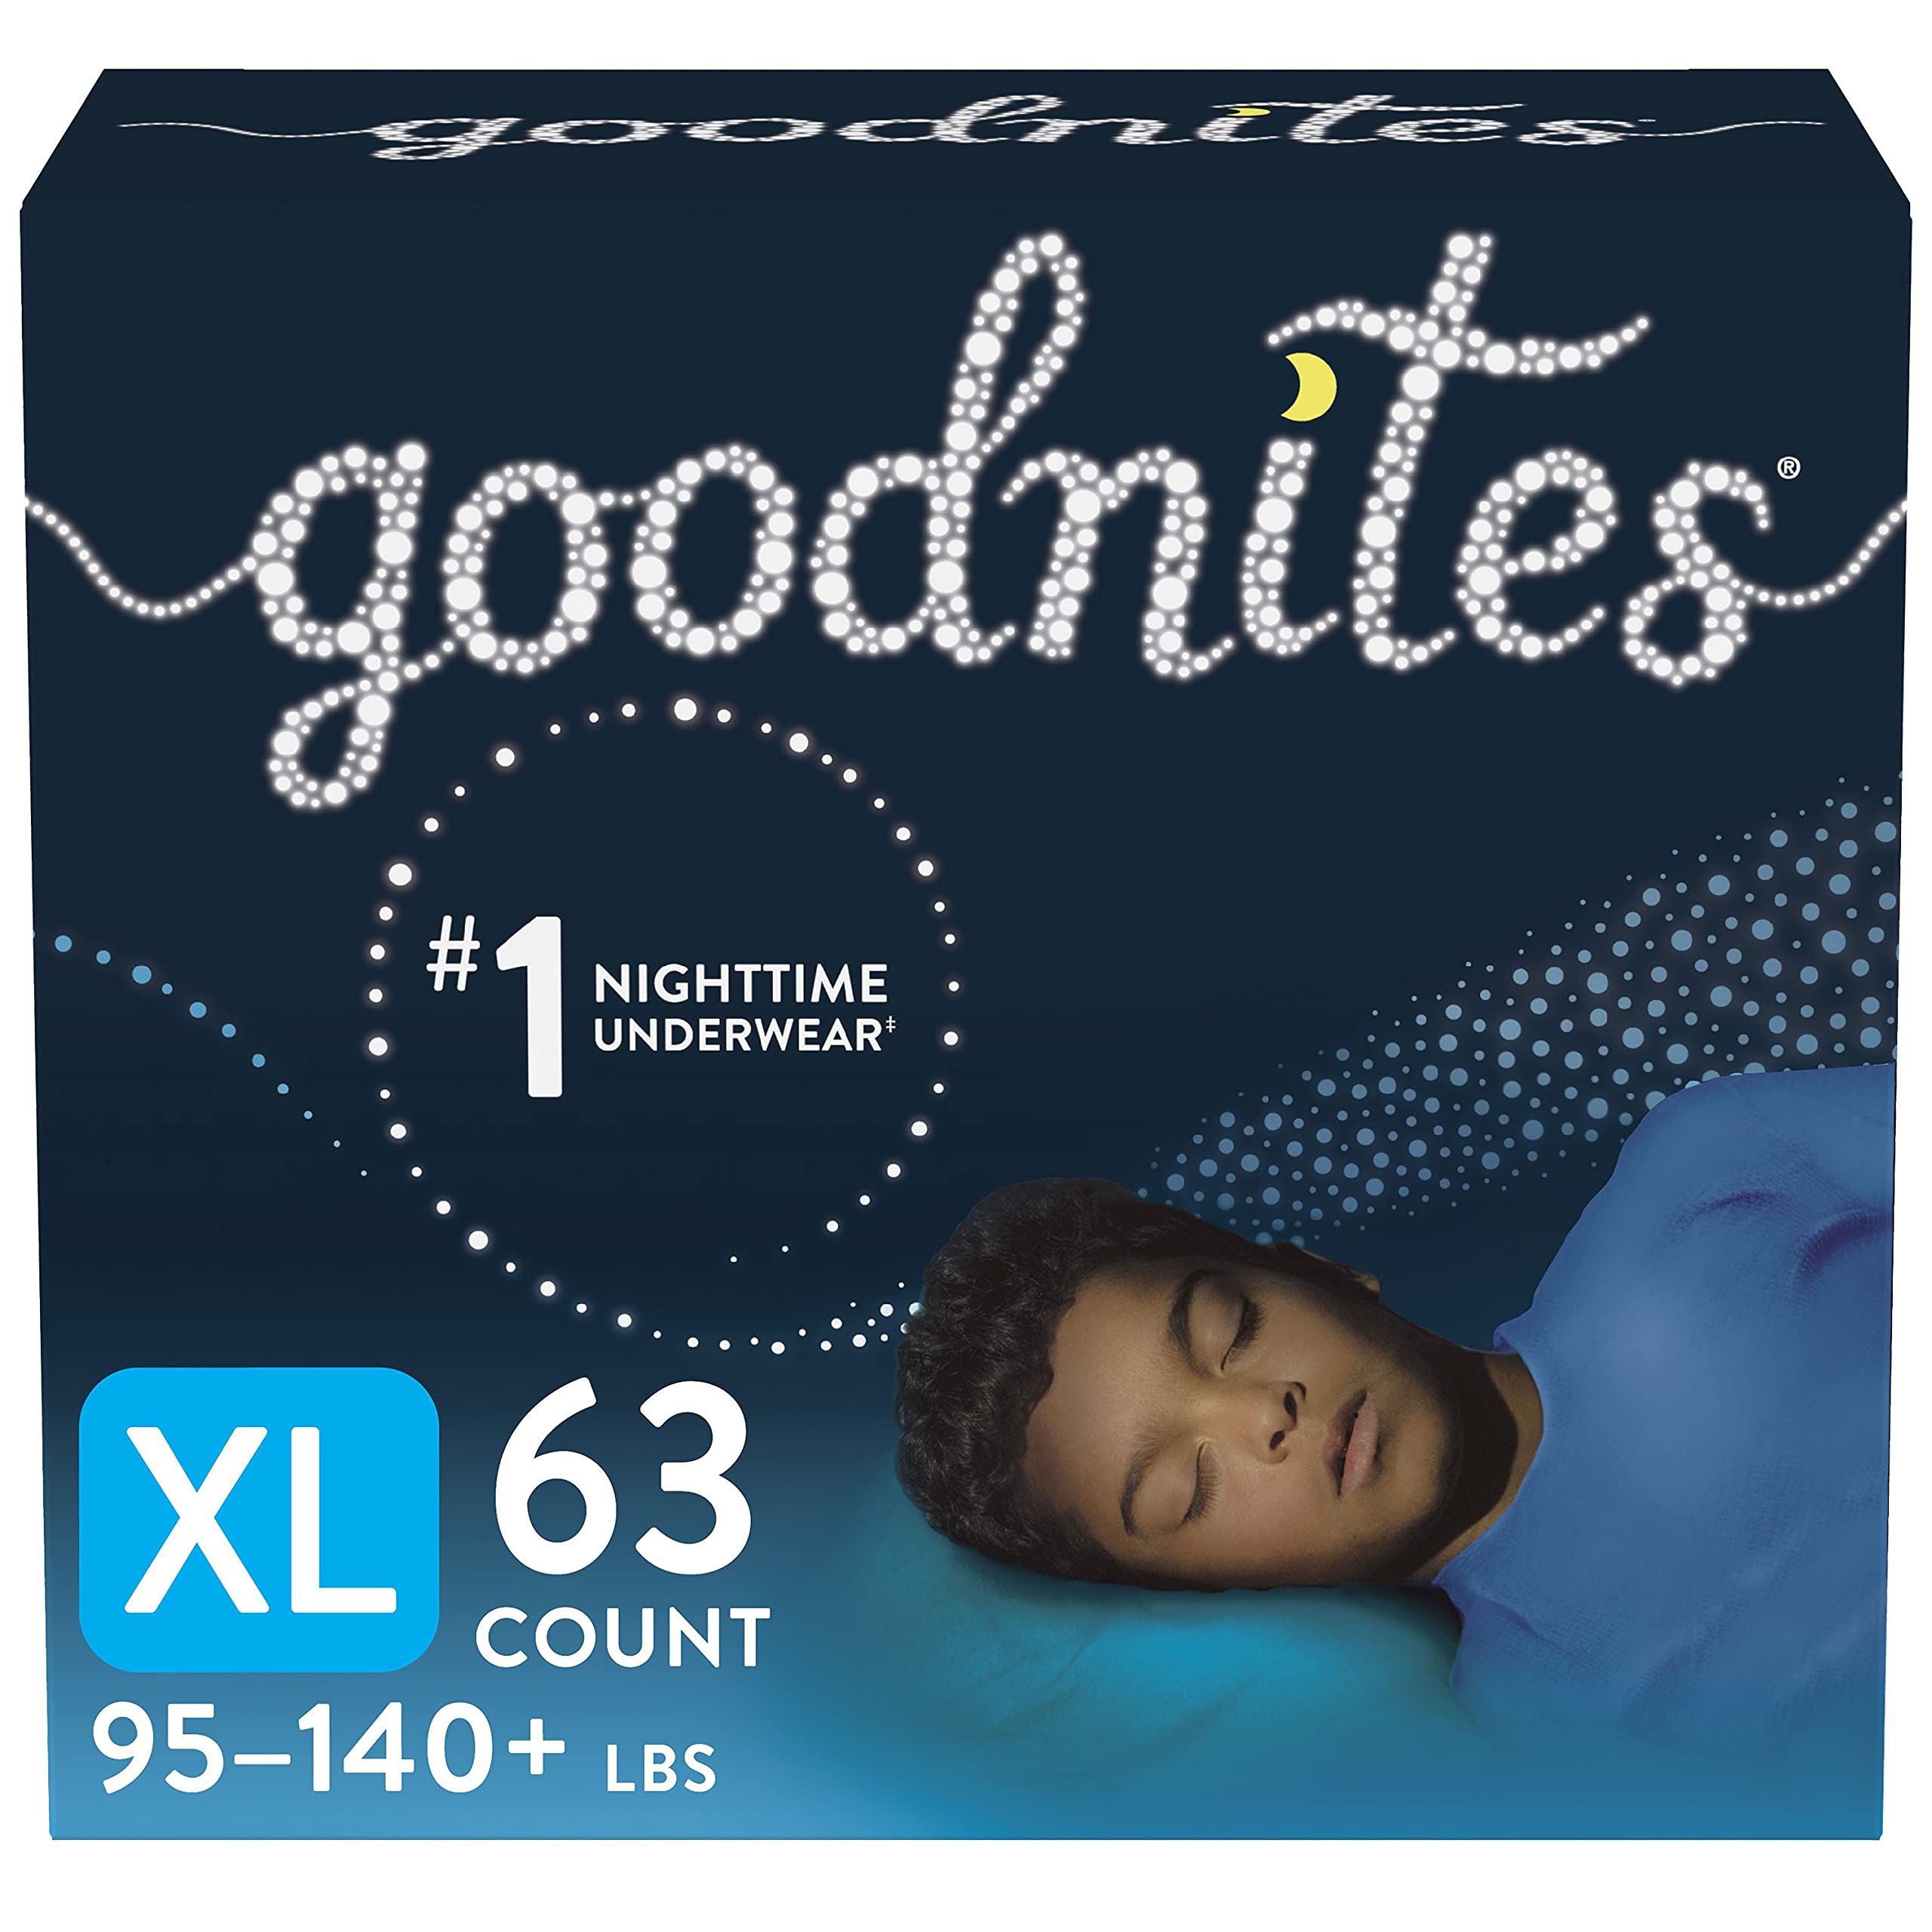 Goodnites Nighttime Bedwetting Underwear, Boys' XL (95-140 lb.), 63ct, FSA/HSA-Eligible